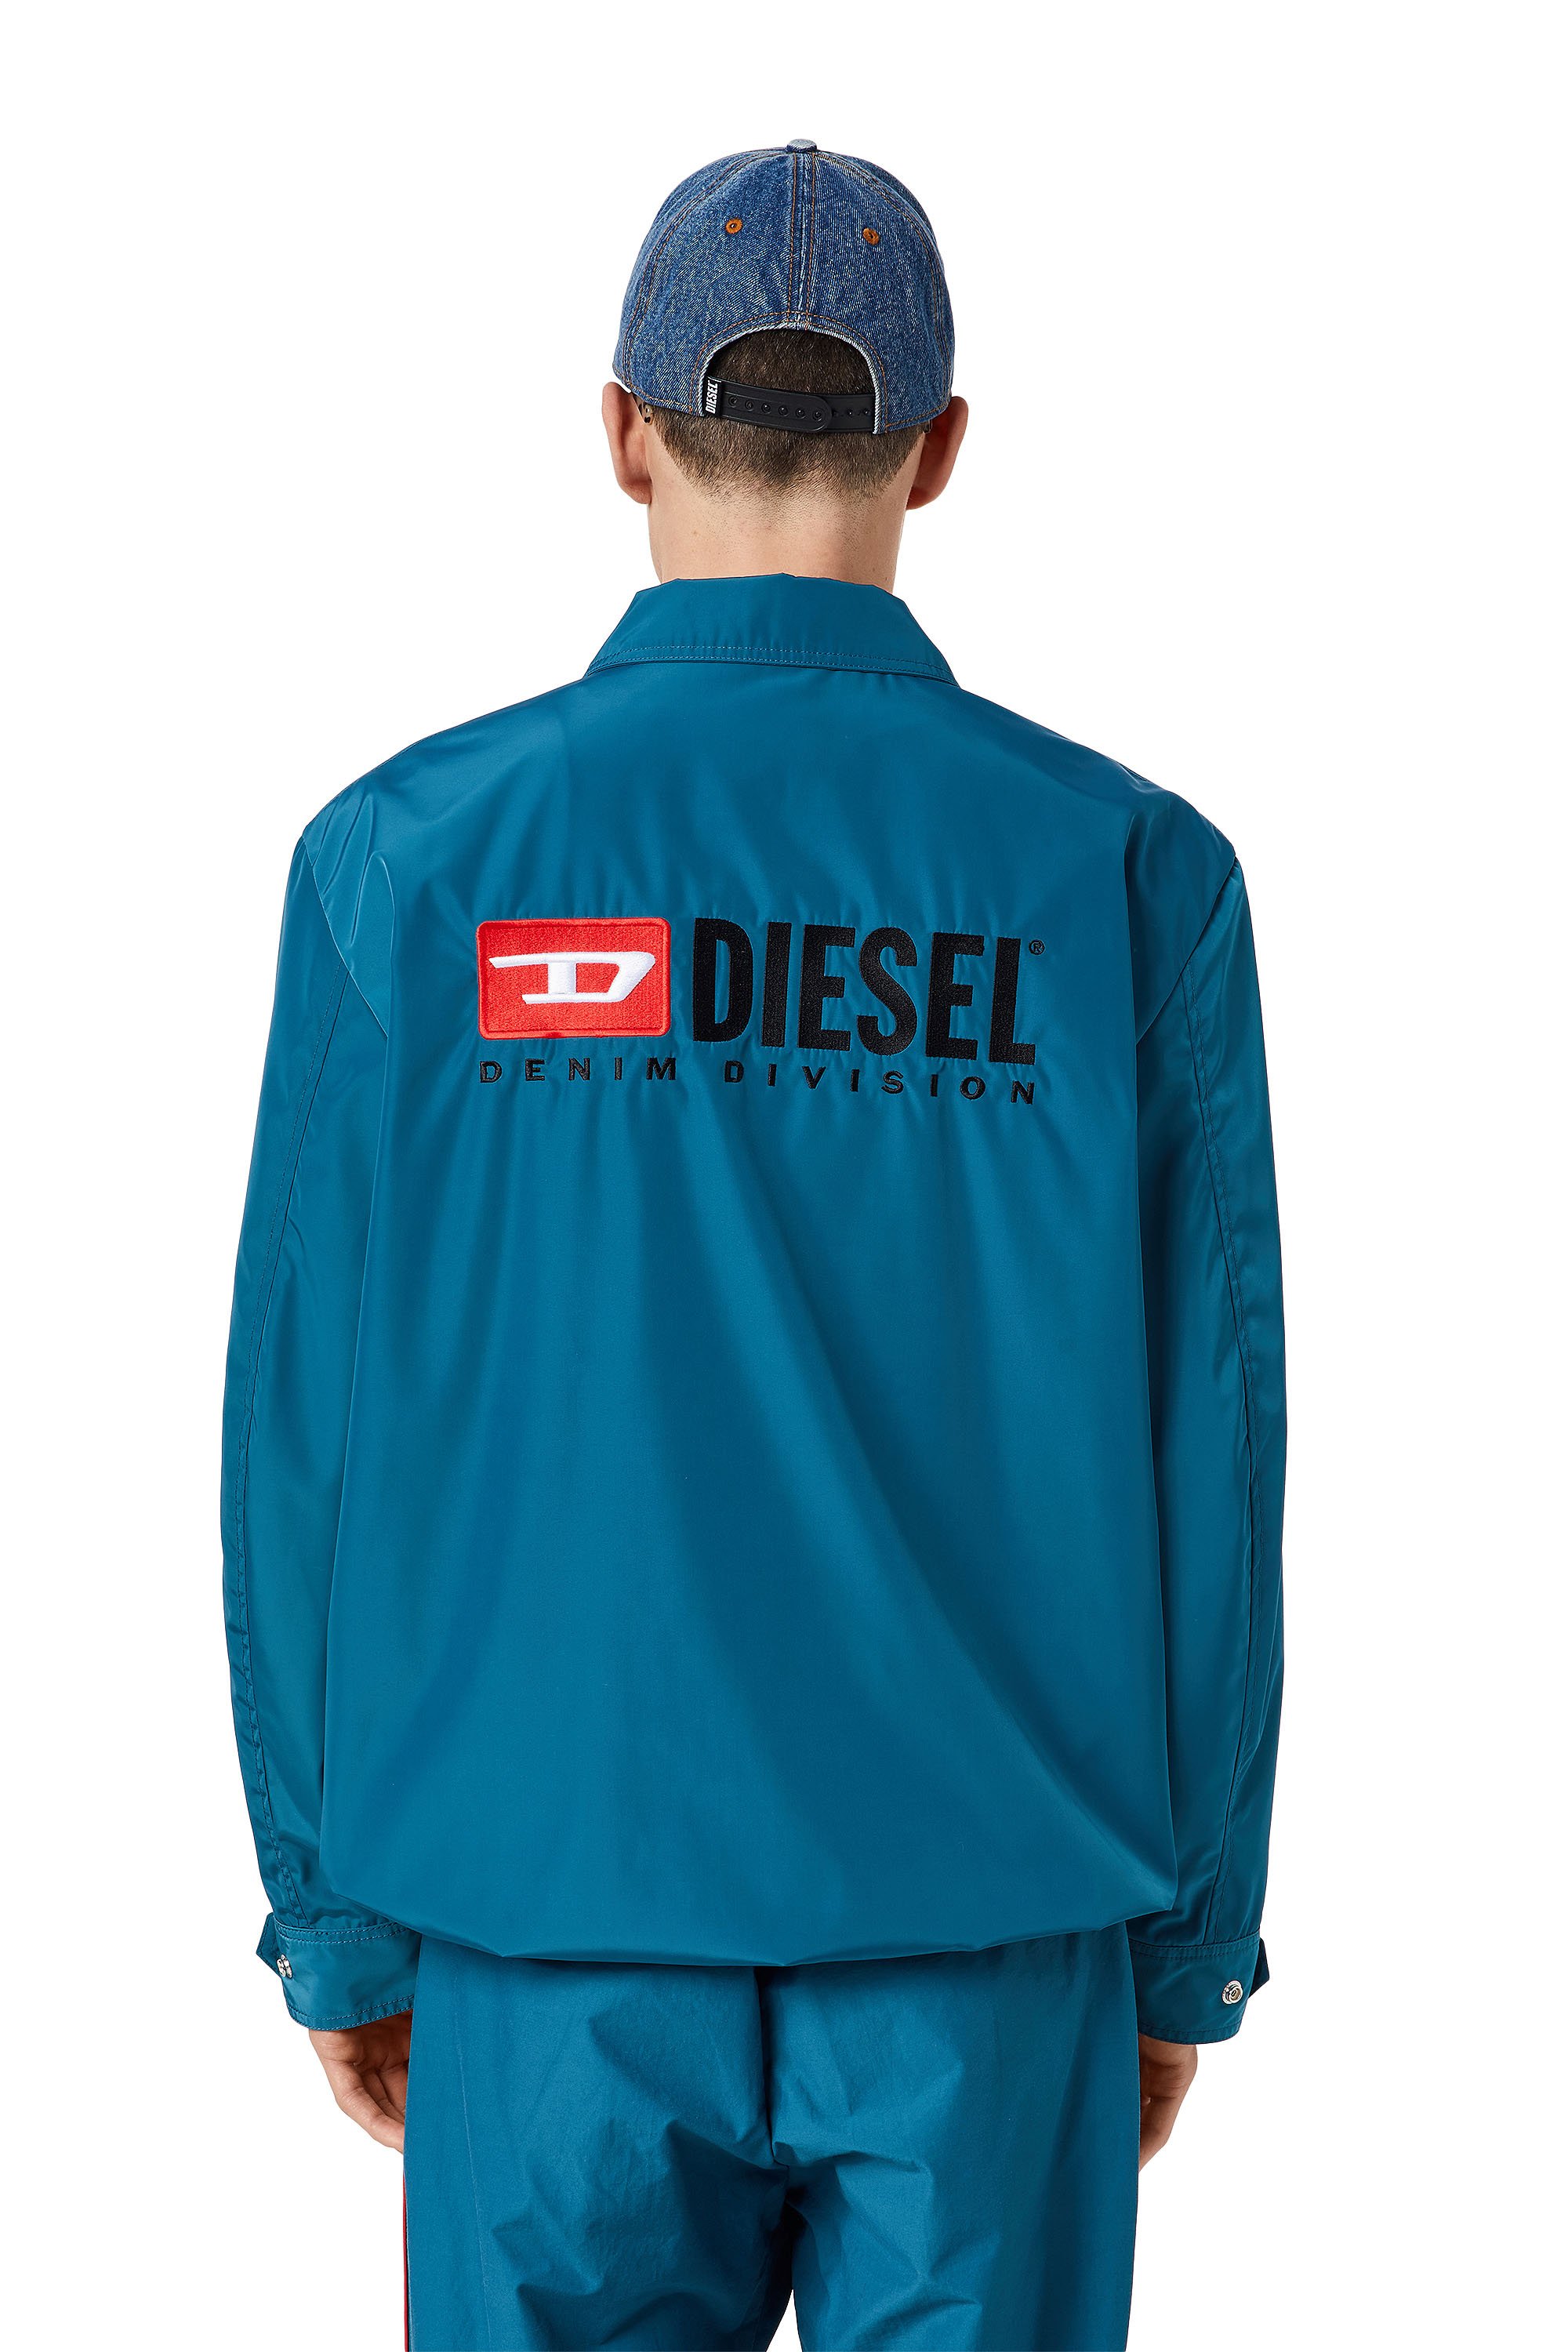 Diesel - J-COAL-NP, Blau - Image 2